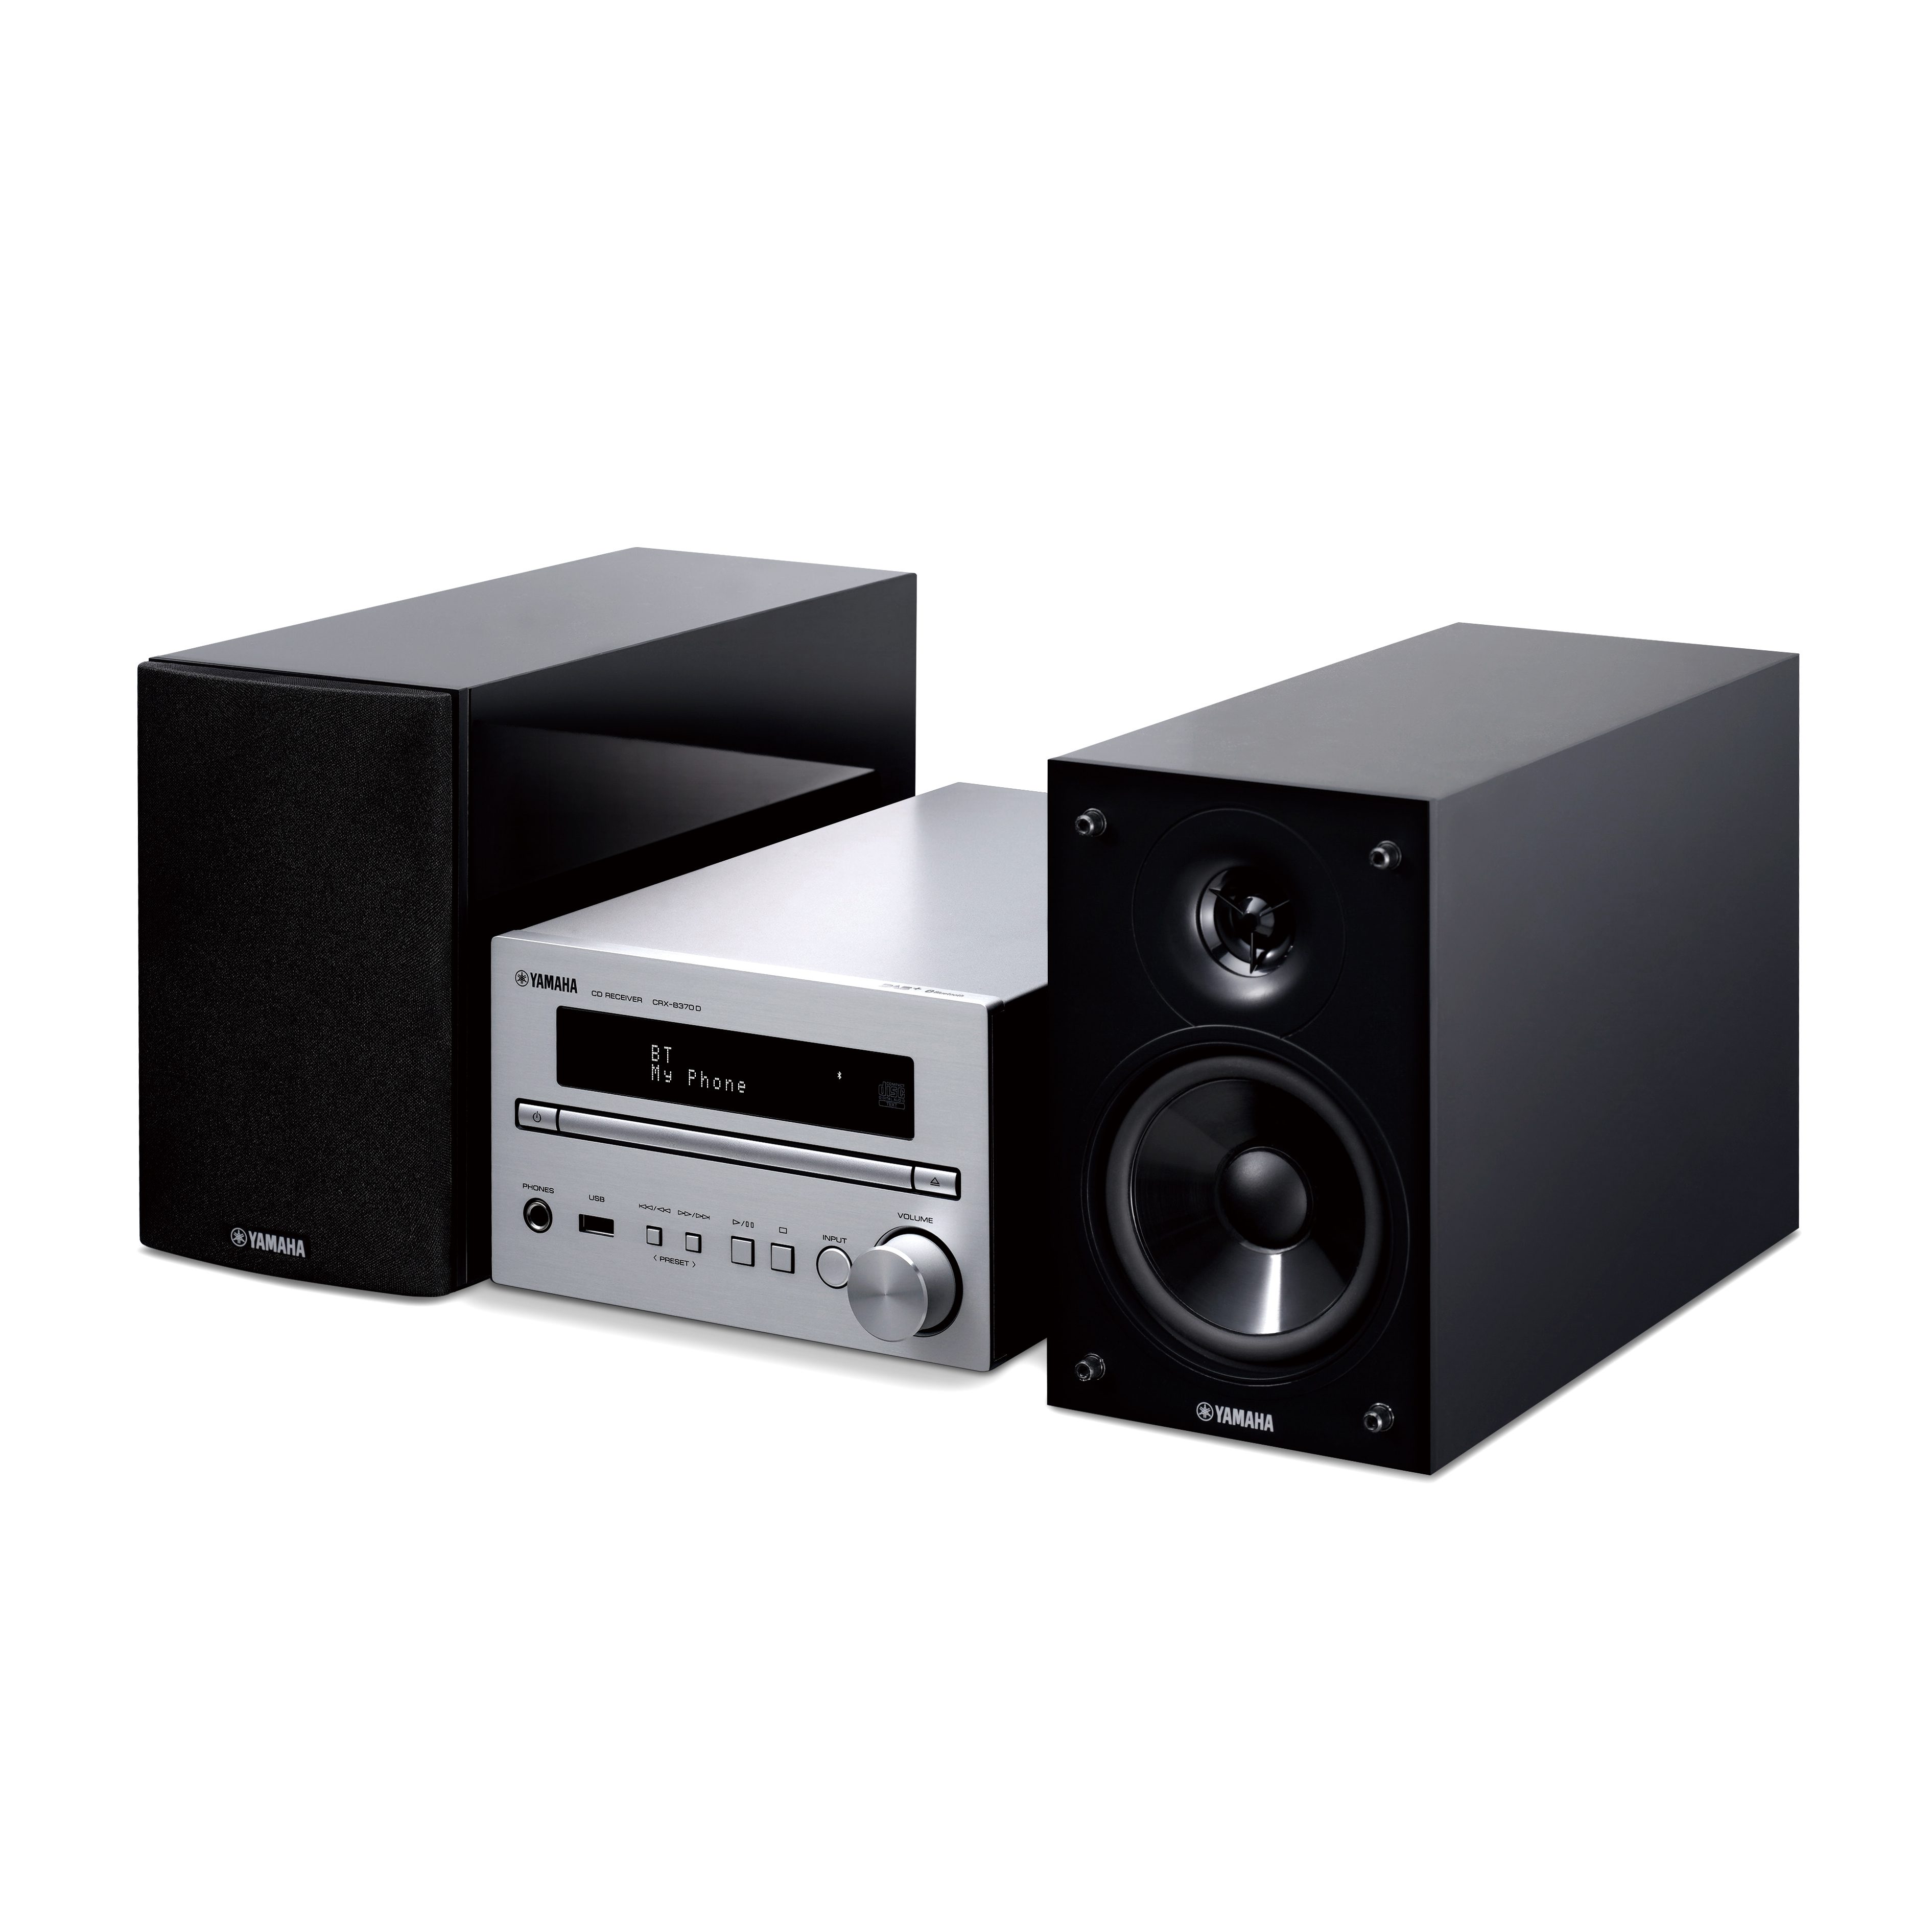 MCR-B370D - Übersicht - HiFi-Systeme - Audio & Video - Produkte ...